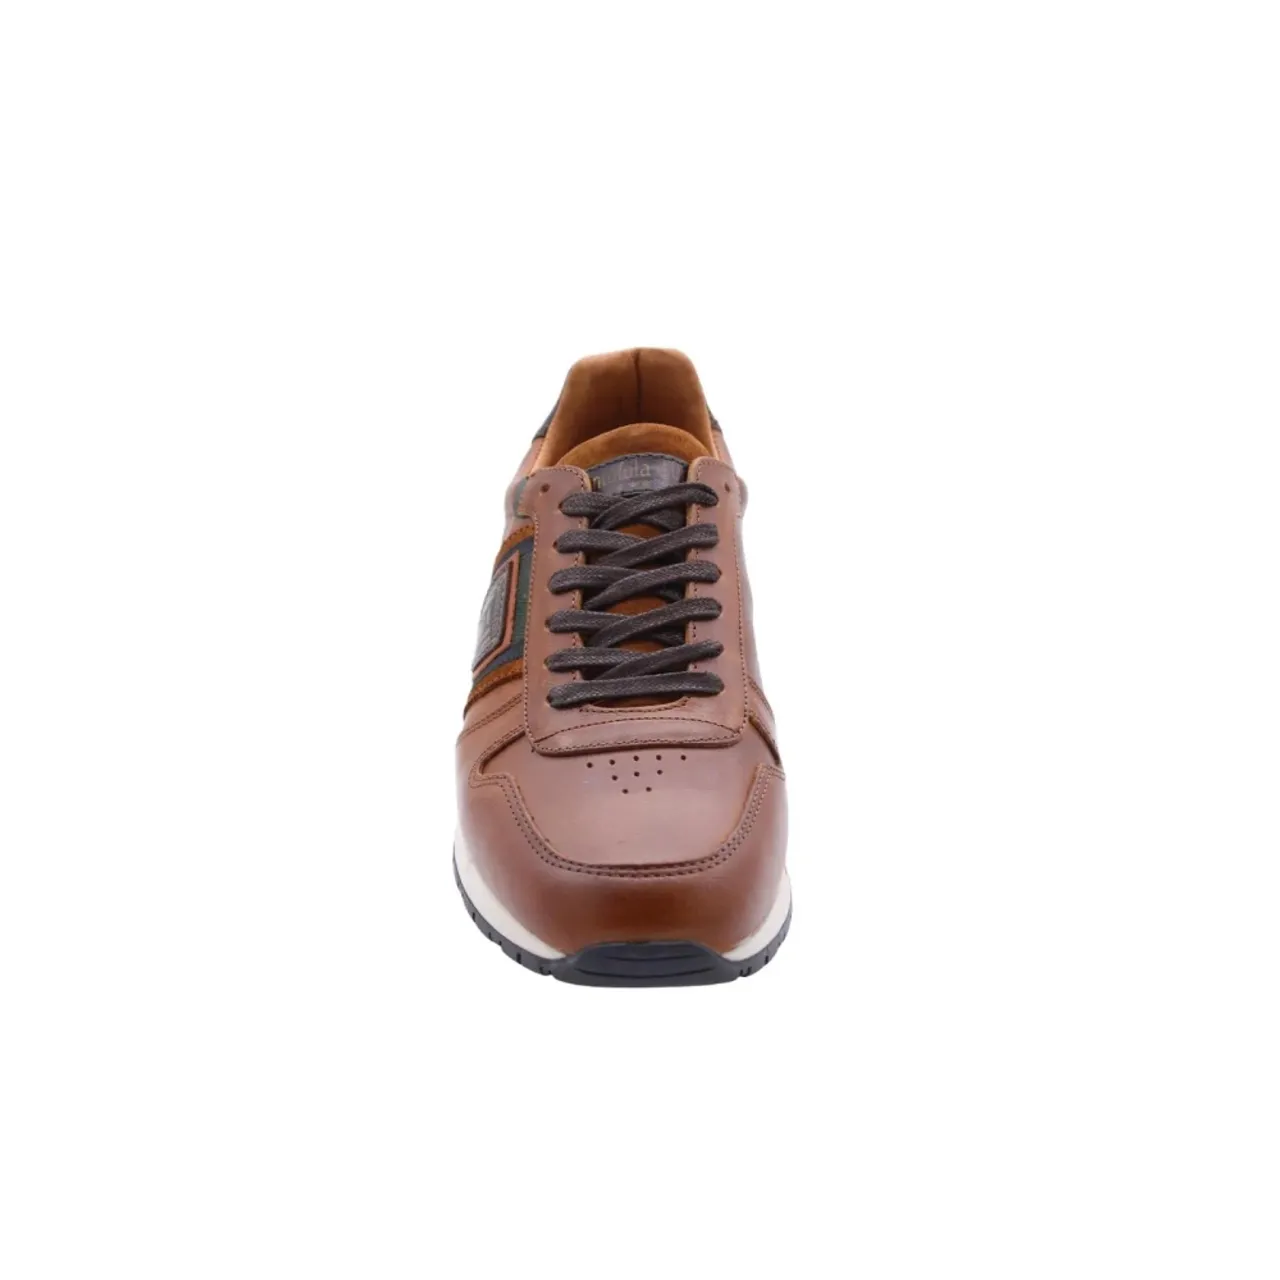 Mispel Sneaker - Stylische Schuhe für Männer Pantofola d'Oro